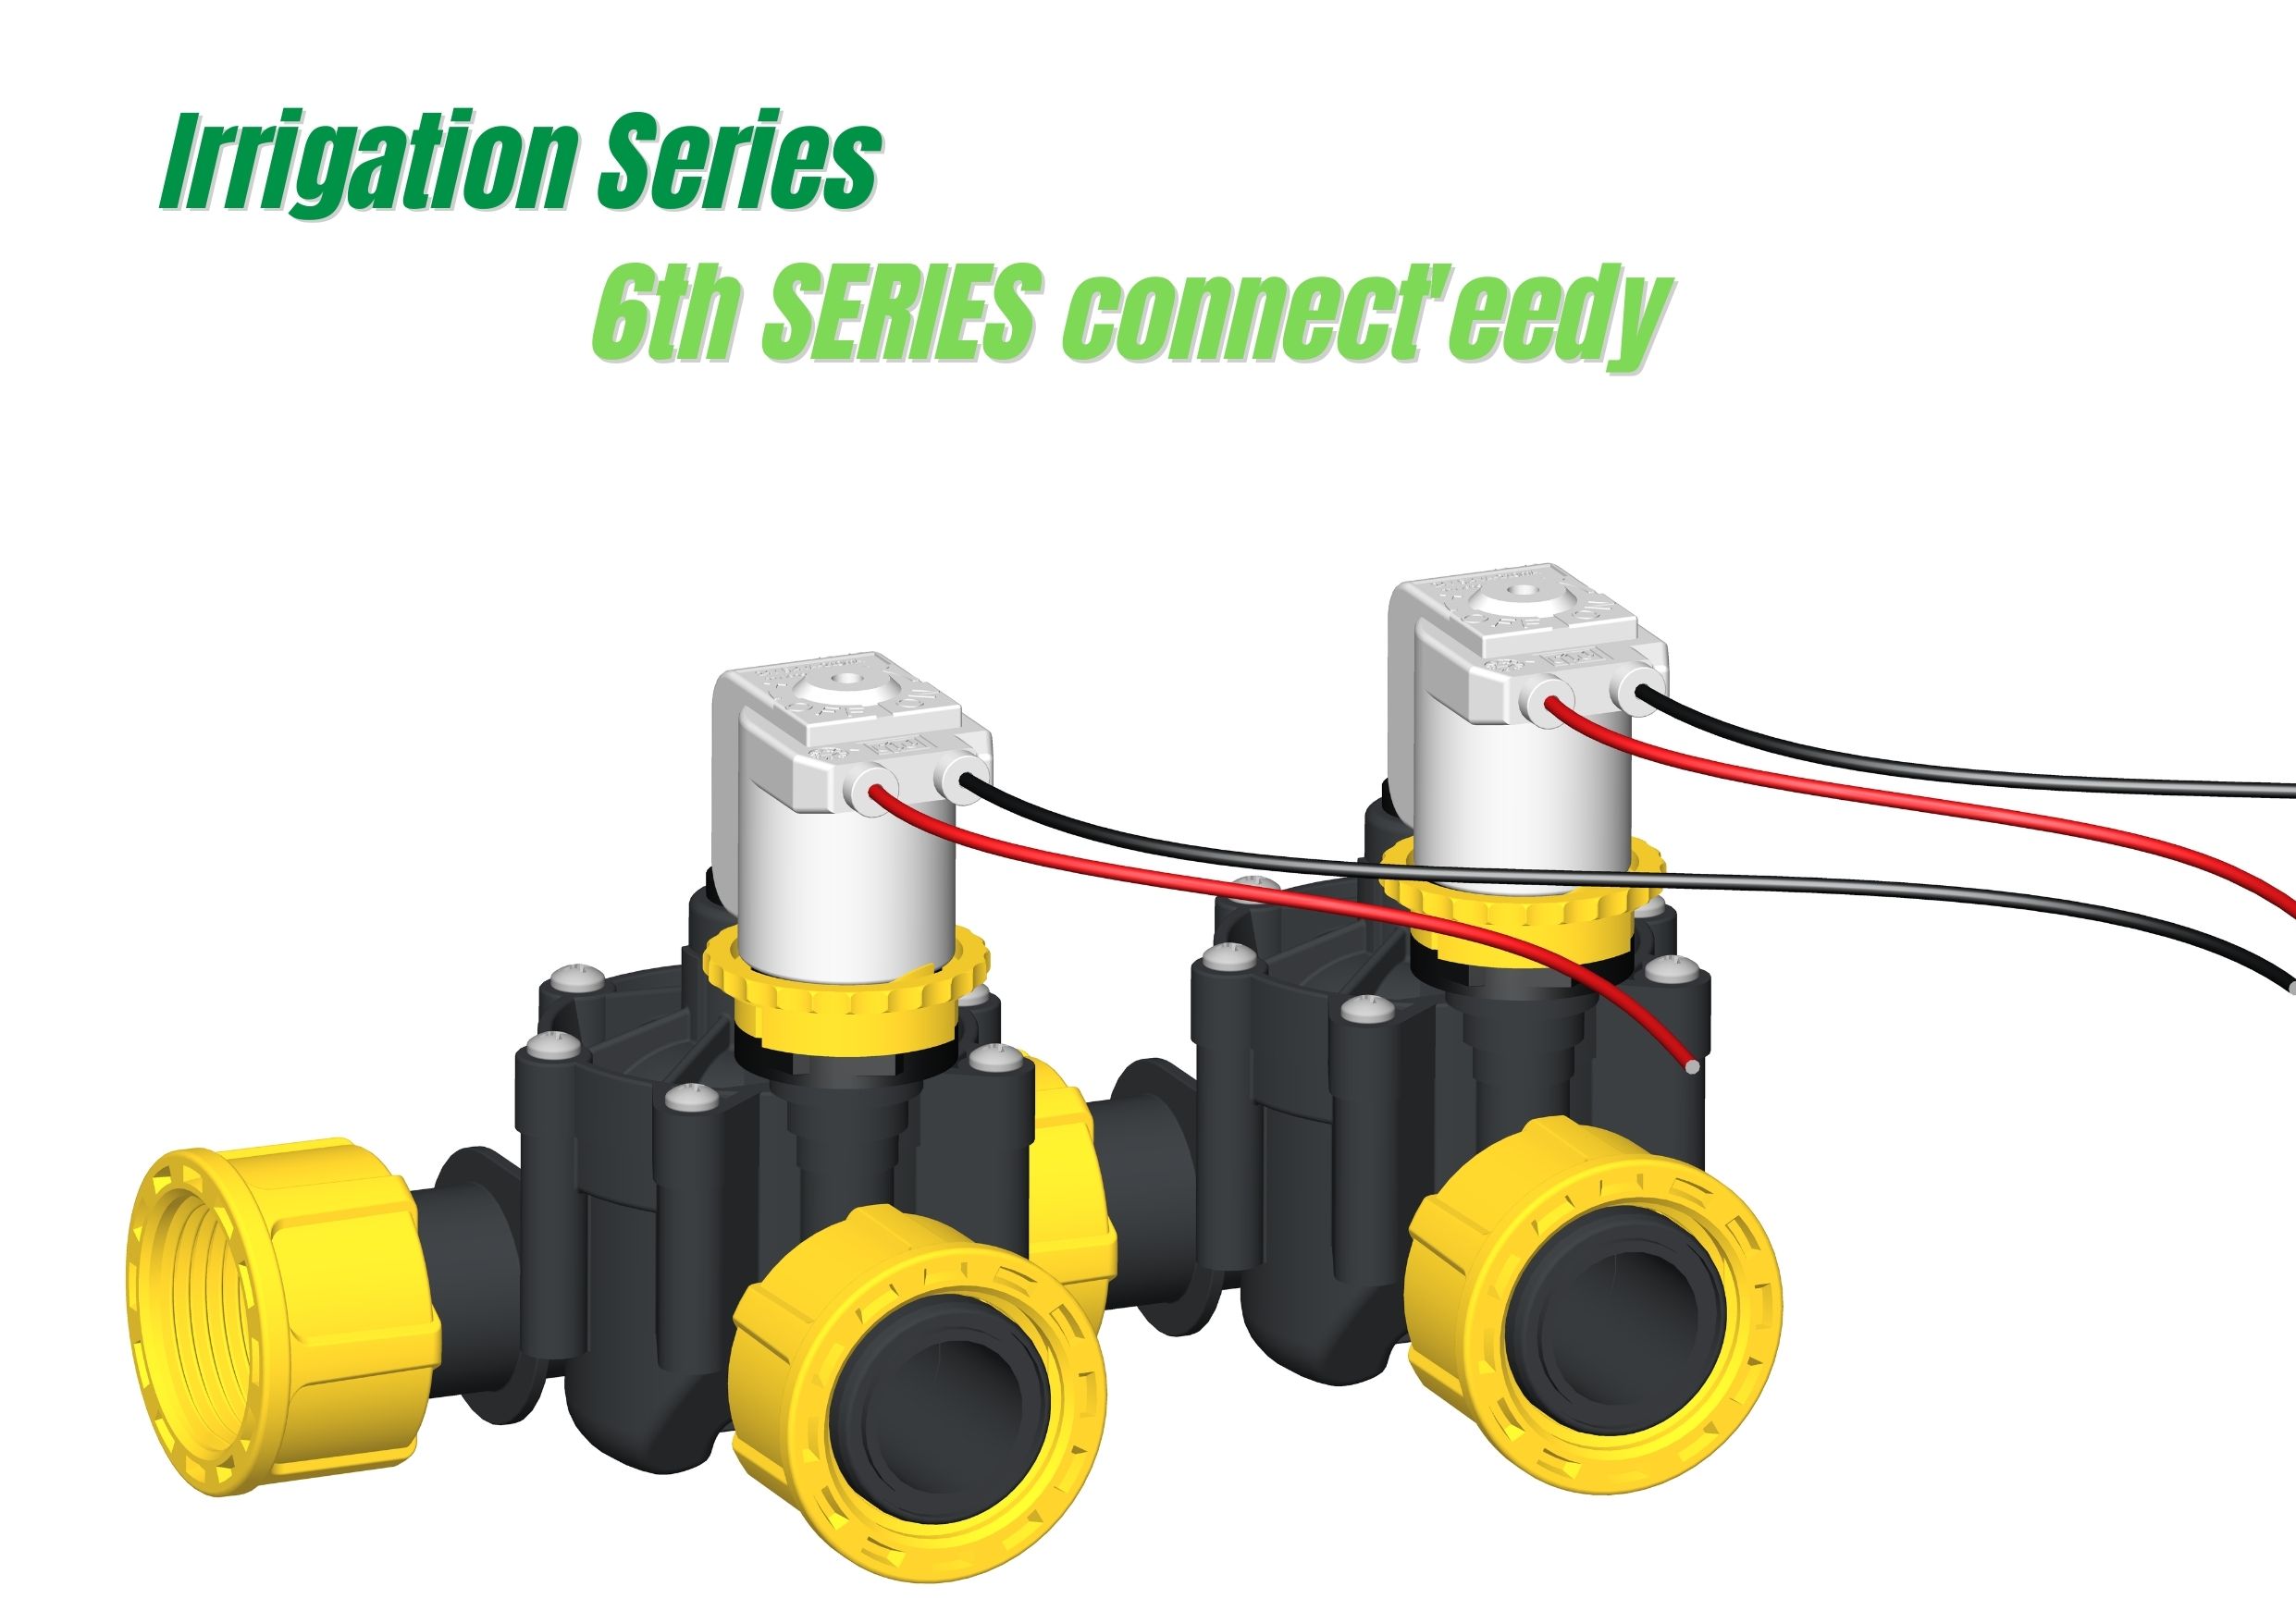 Descubre la nueva 6ª Serie Connect'eedy - electroválvula modular para el riego